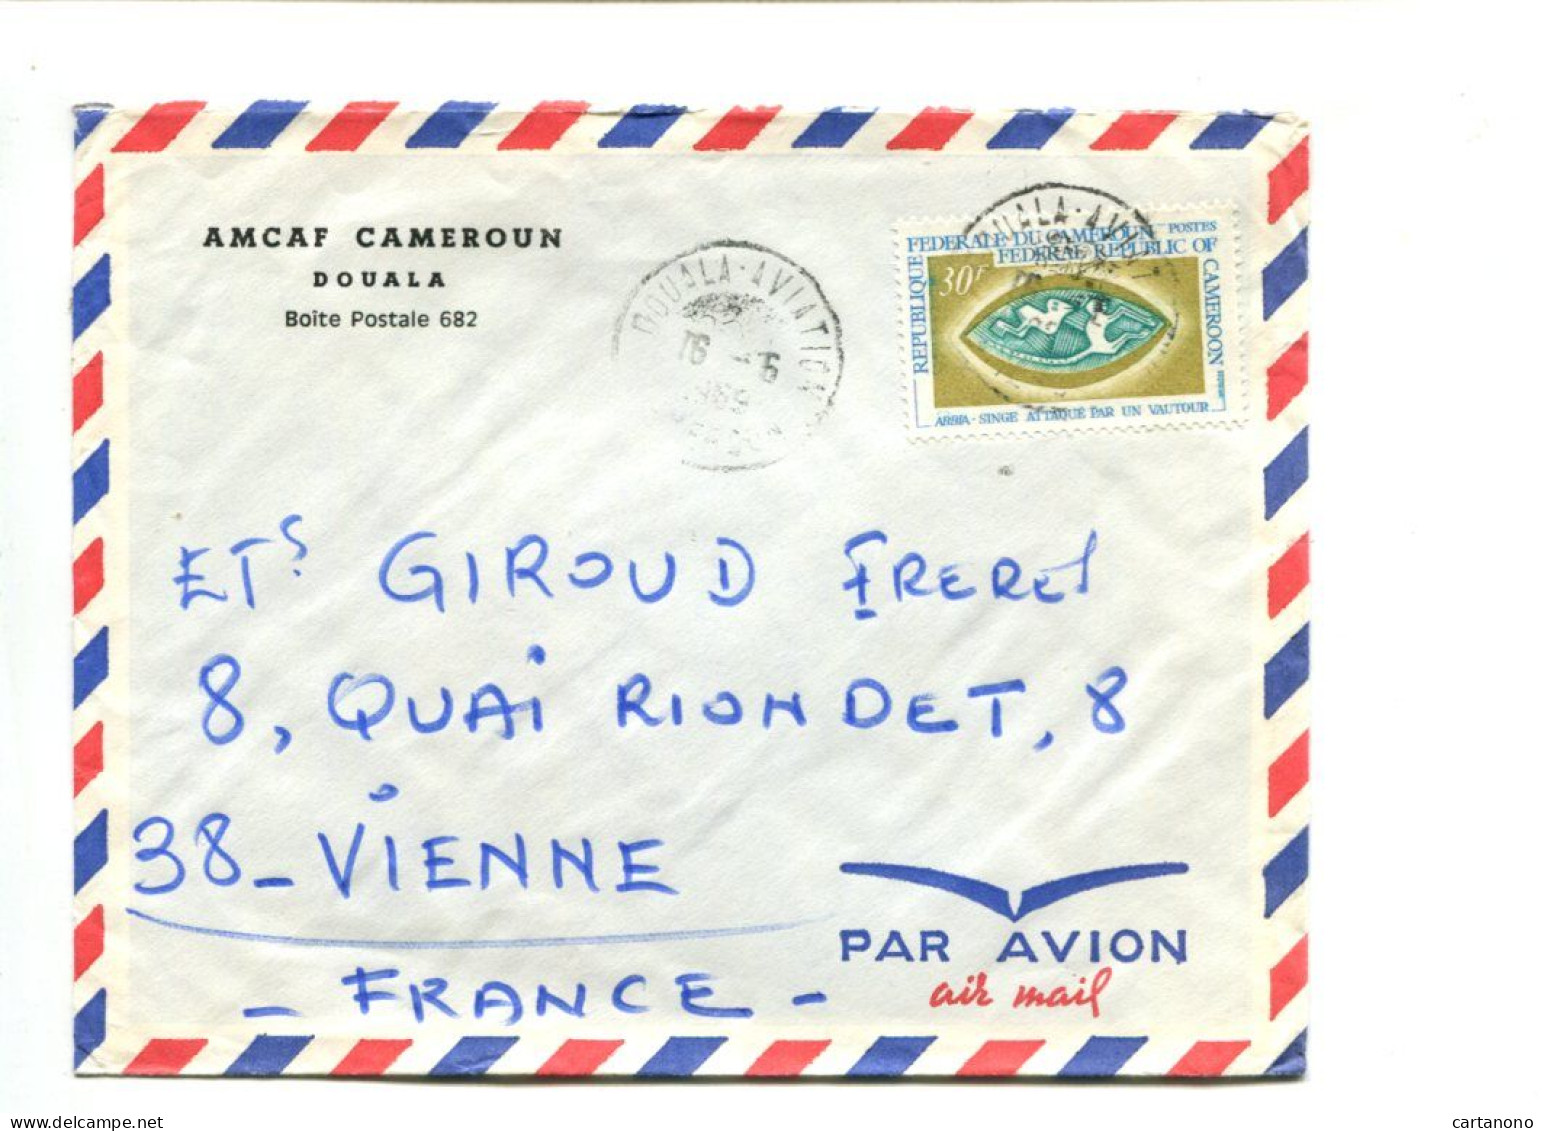 CAMEROUN - Affranchissement Sur Lettre Par Avion - ABBIA / Singe Attaqué Par Un Vautour - Camerun (1960-...)